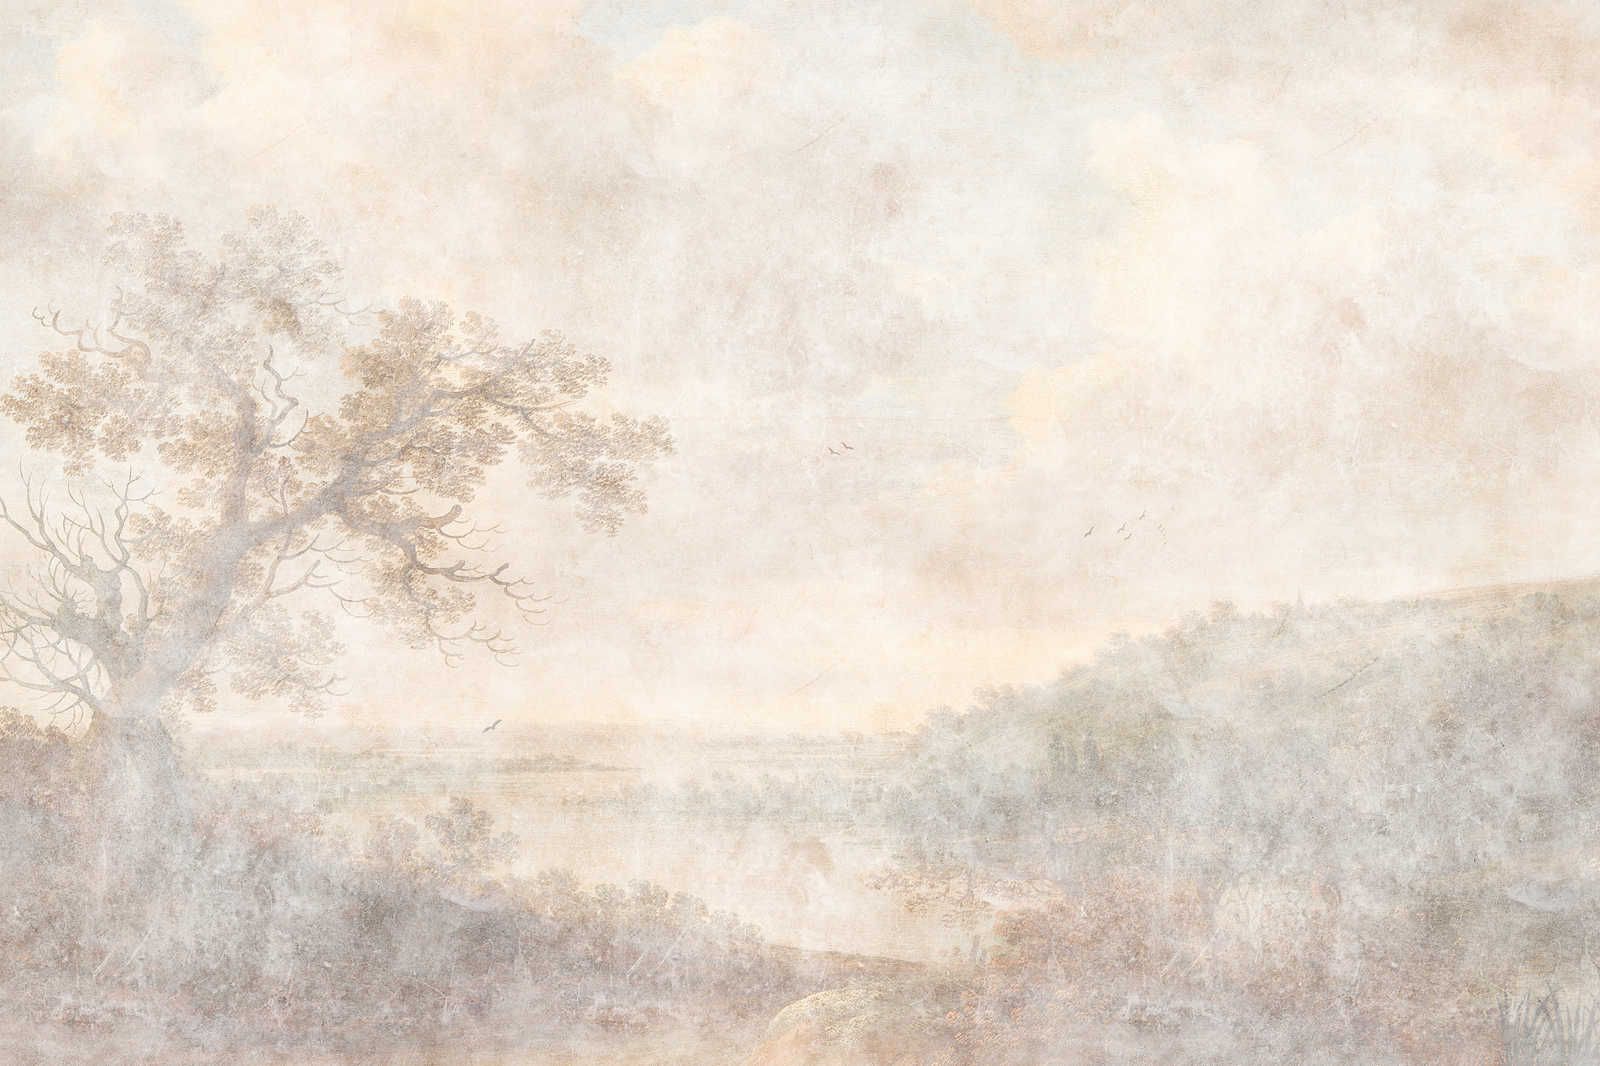             Romantic River 1 - Canvas schilderij Historische Kunst Design in Tweedehands Look - 0,90 m x 0,60 m
        